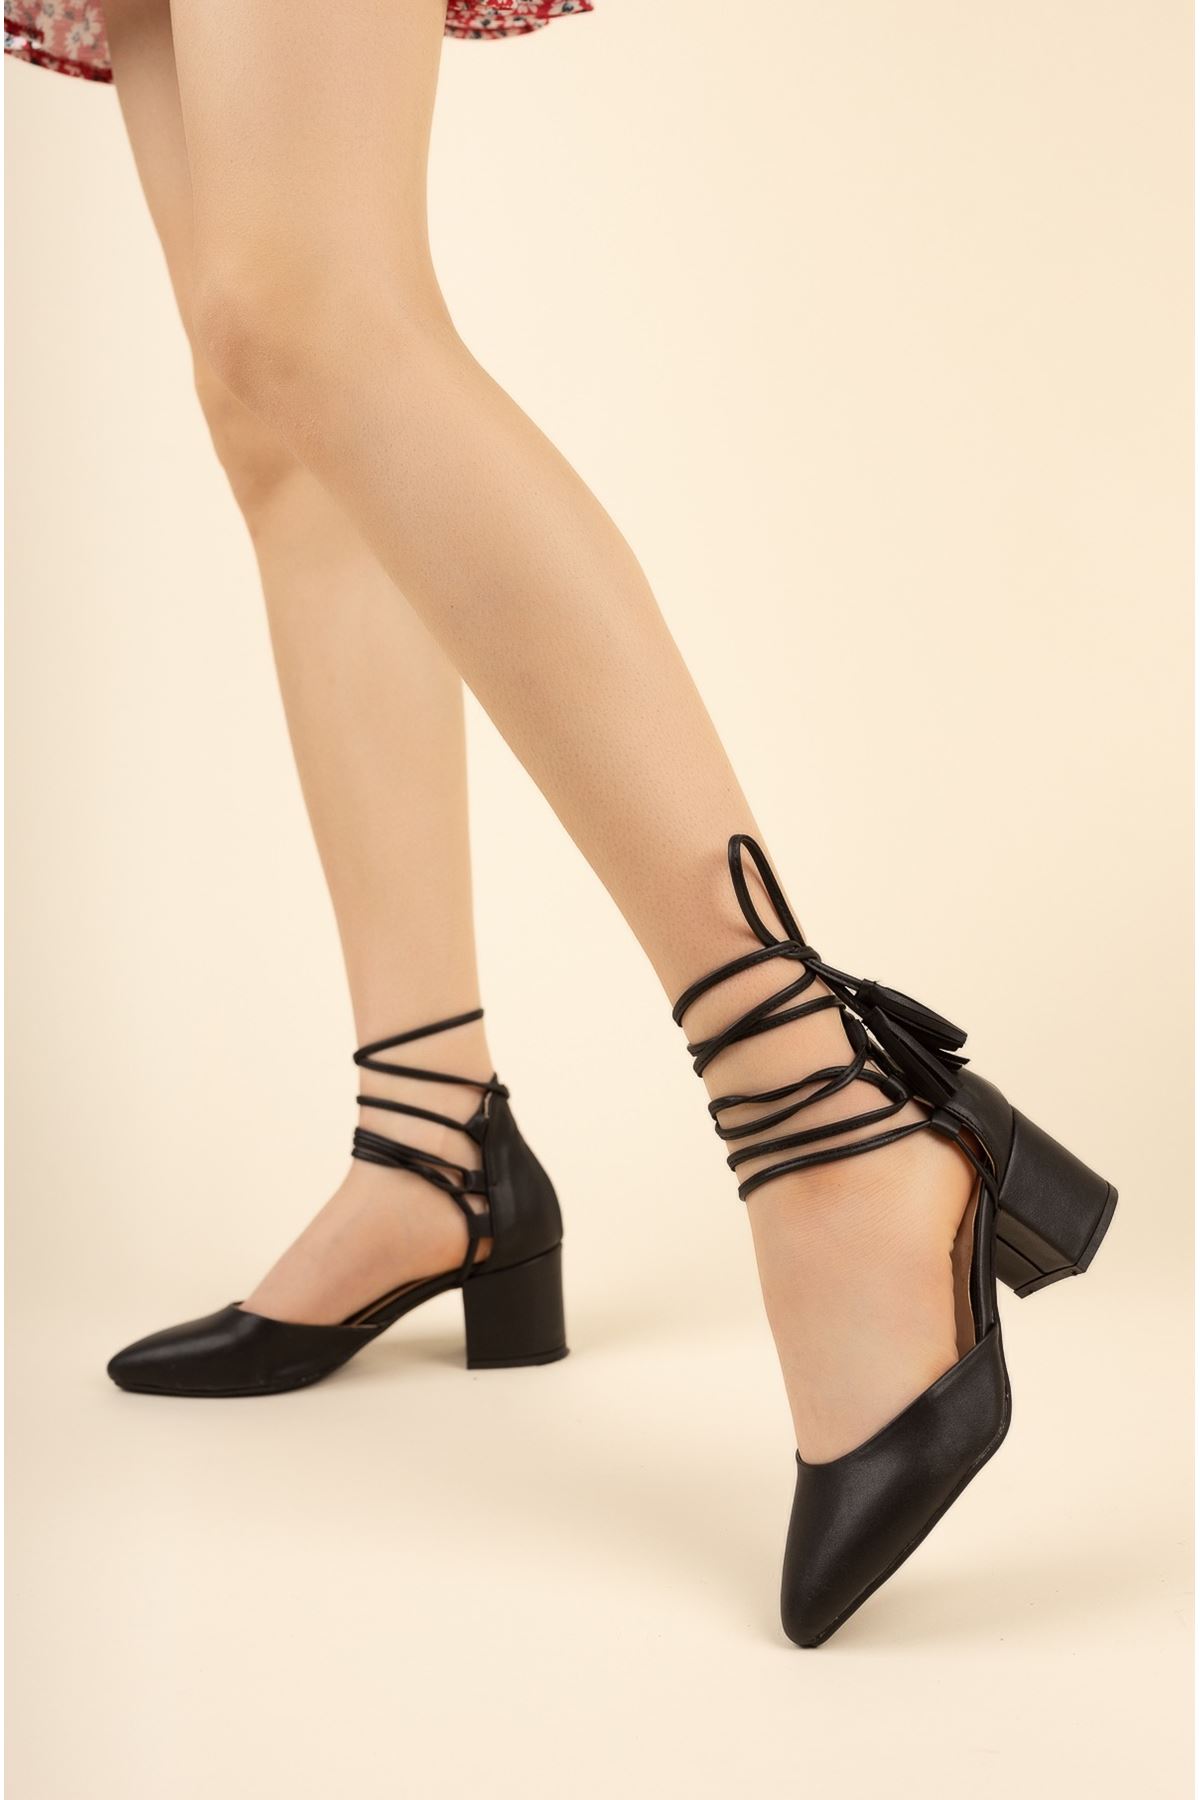 Kadın Yeti Kısa Topuklu Ayakkabı - siyah-deri